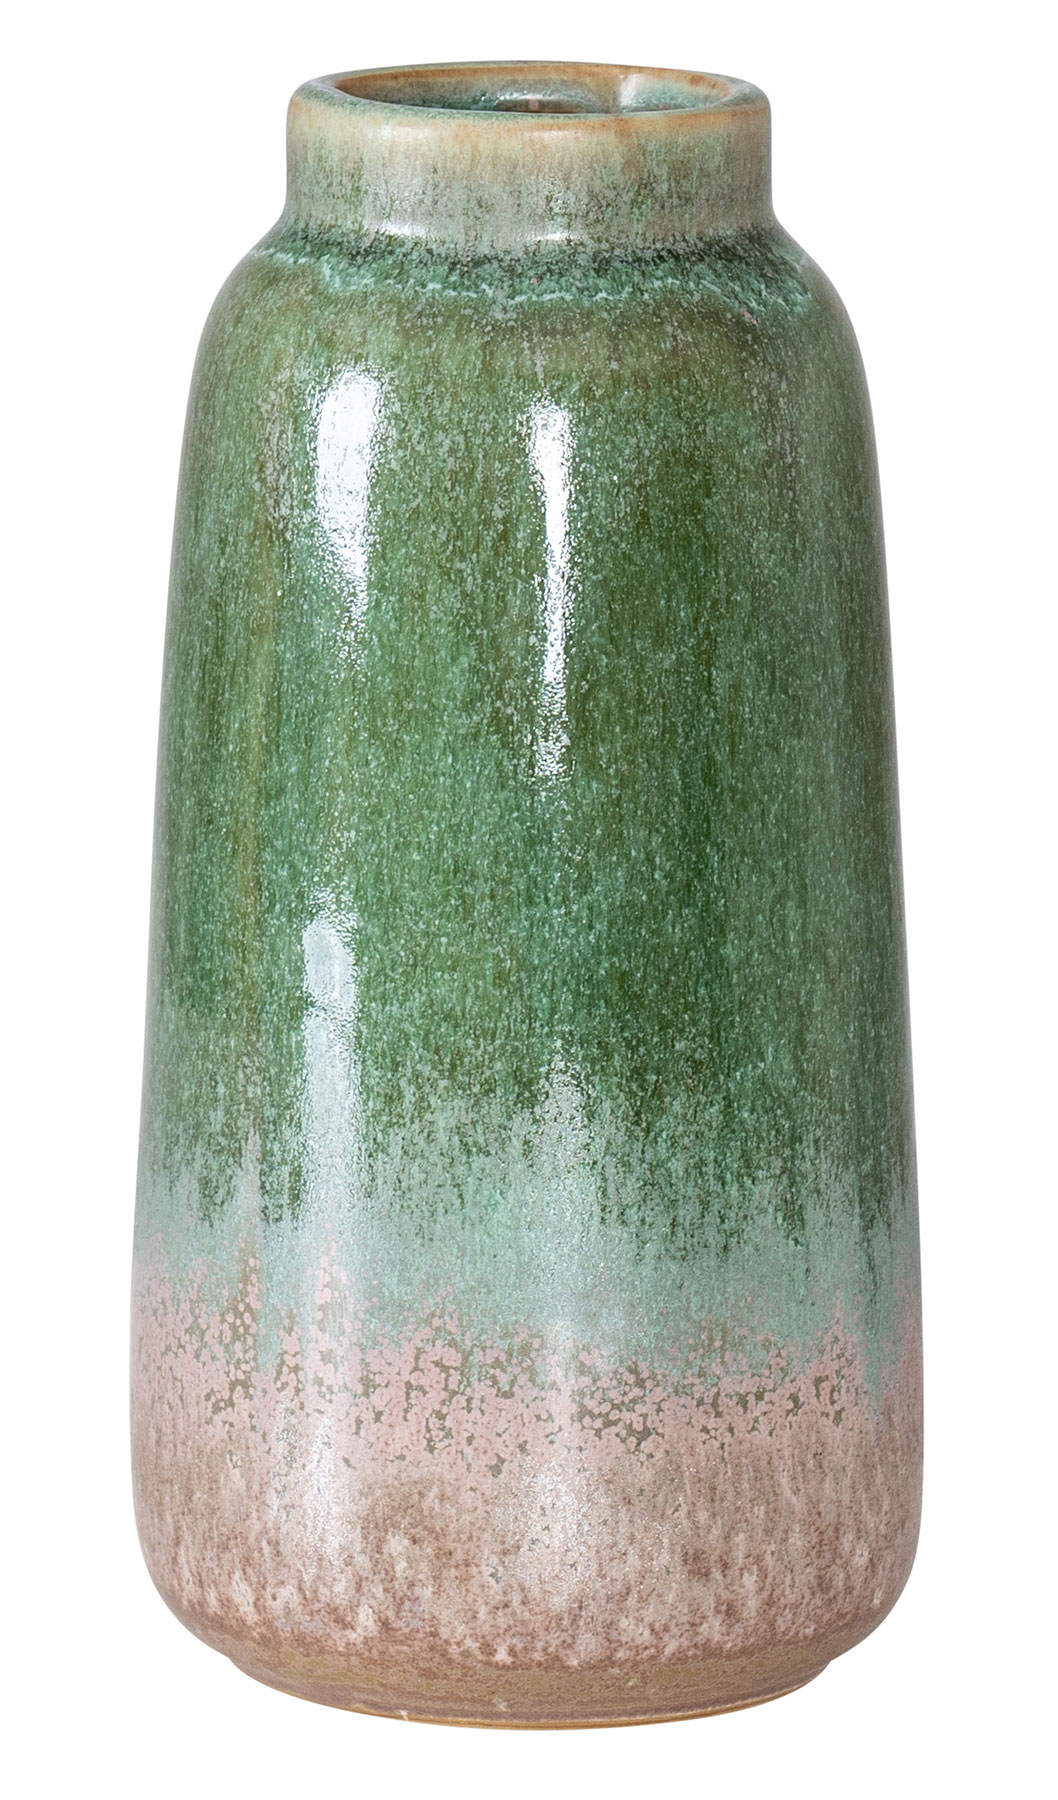 Blumenvase H17cm Vase Porzellan Grün Taupe Tischdeko Dekovase Deko Porzellanvase